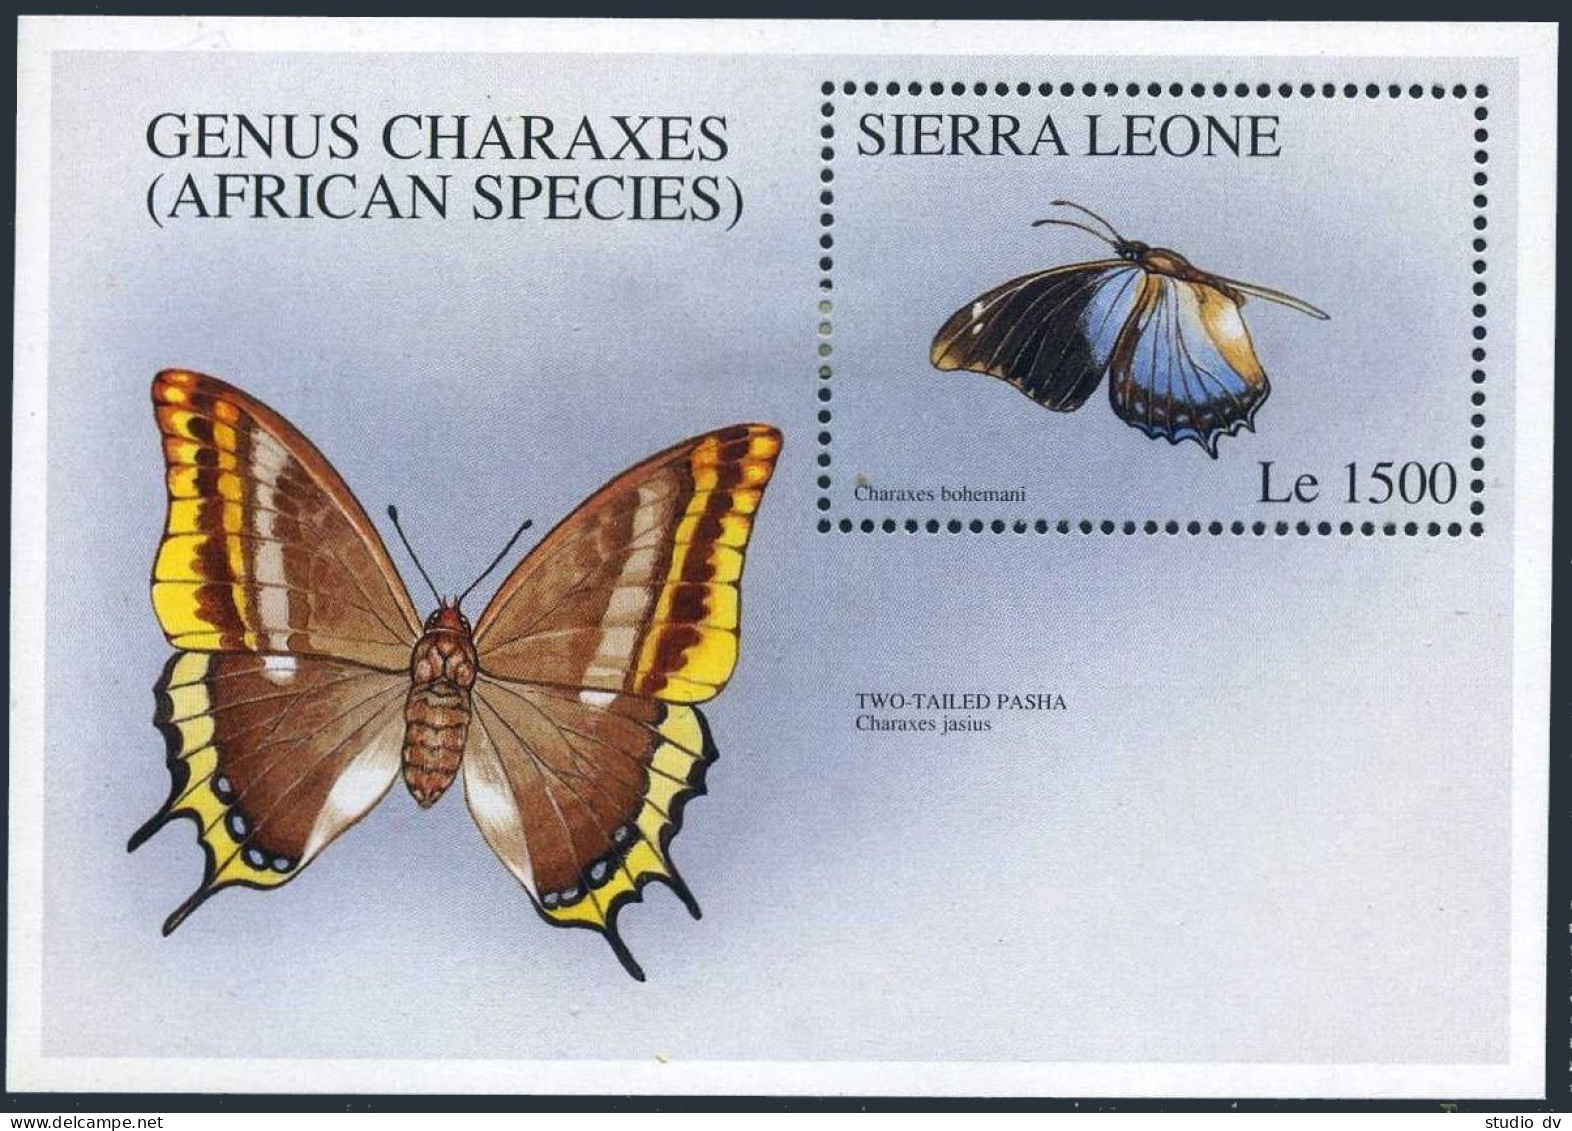 Sierra Leone 1911-1912 Sheets, Hinged. Butterflies 1996. - Sierra Leone (1961-...)